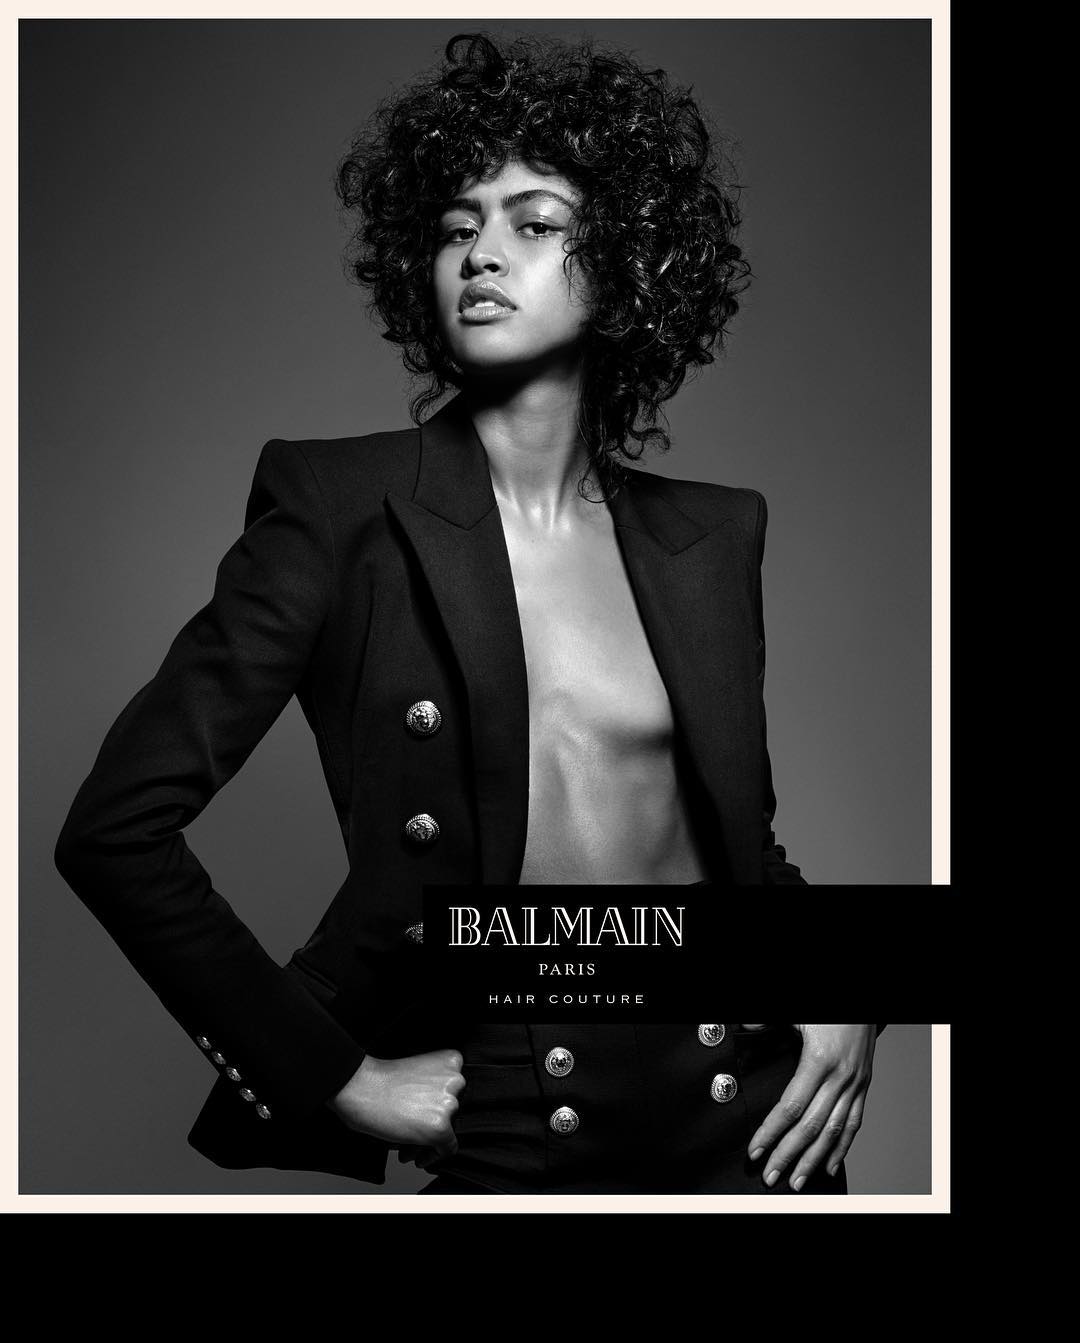 Luz Pavon for Balmain Hair Couture Spring 2017 campaign